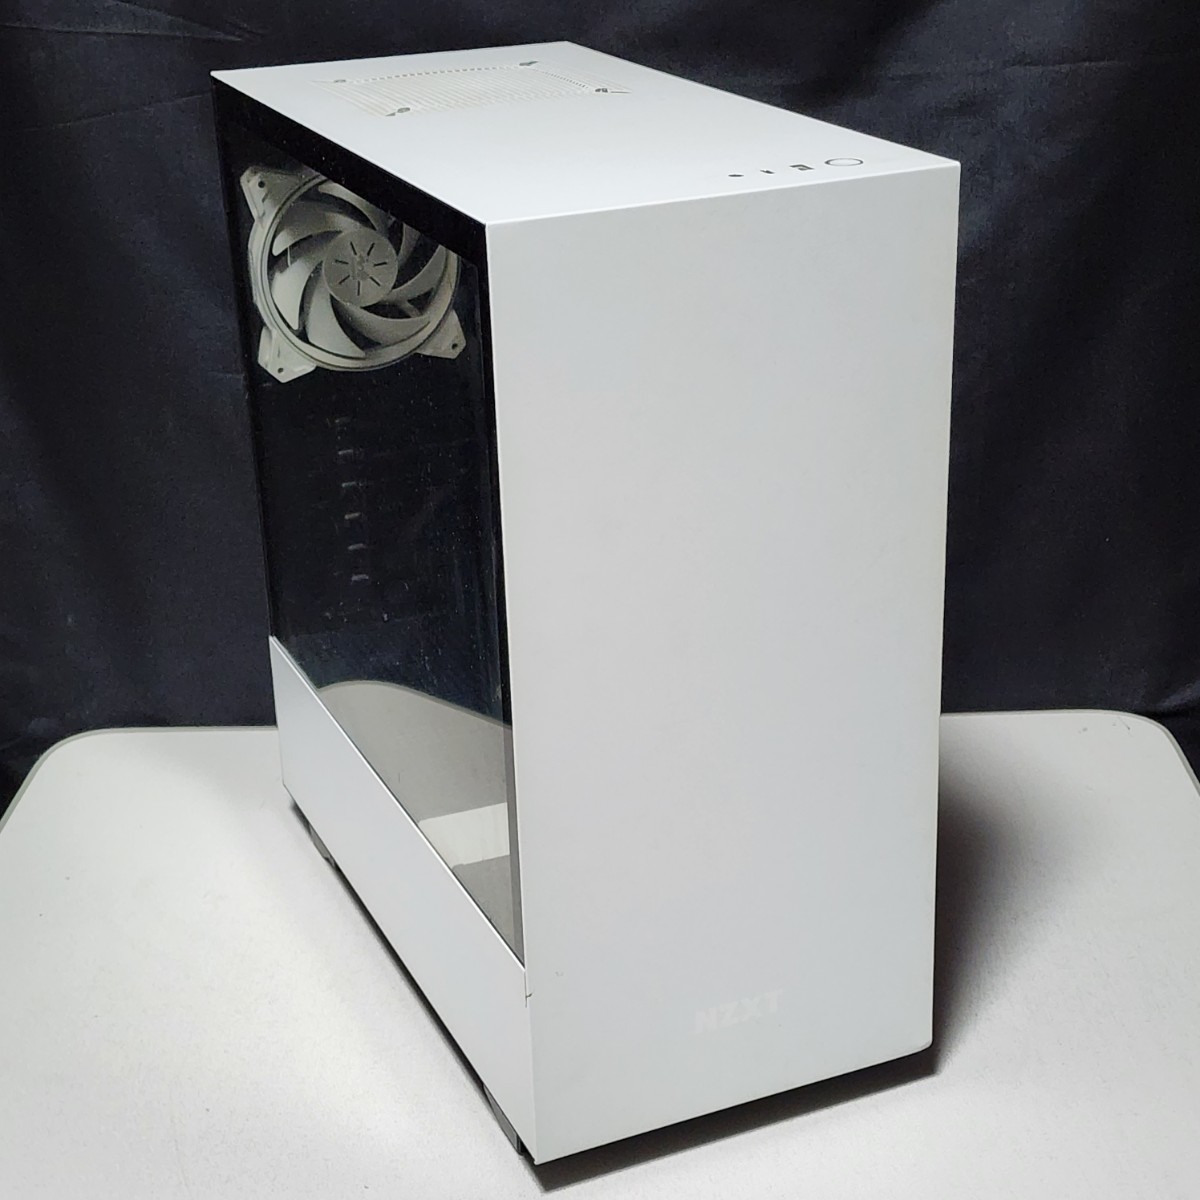 【送料無料】NZXT H510 White&Black(CM-H510B-W1) ミドルタワー型PCケース(ATX) IN WIN SIRIUS PURE×3基搭載_画像1